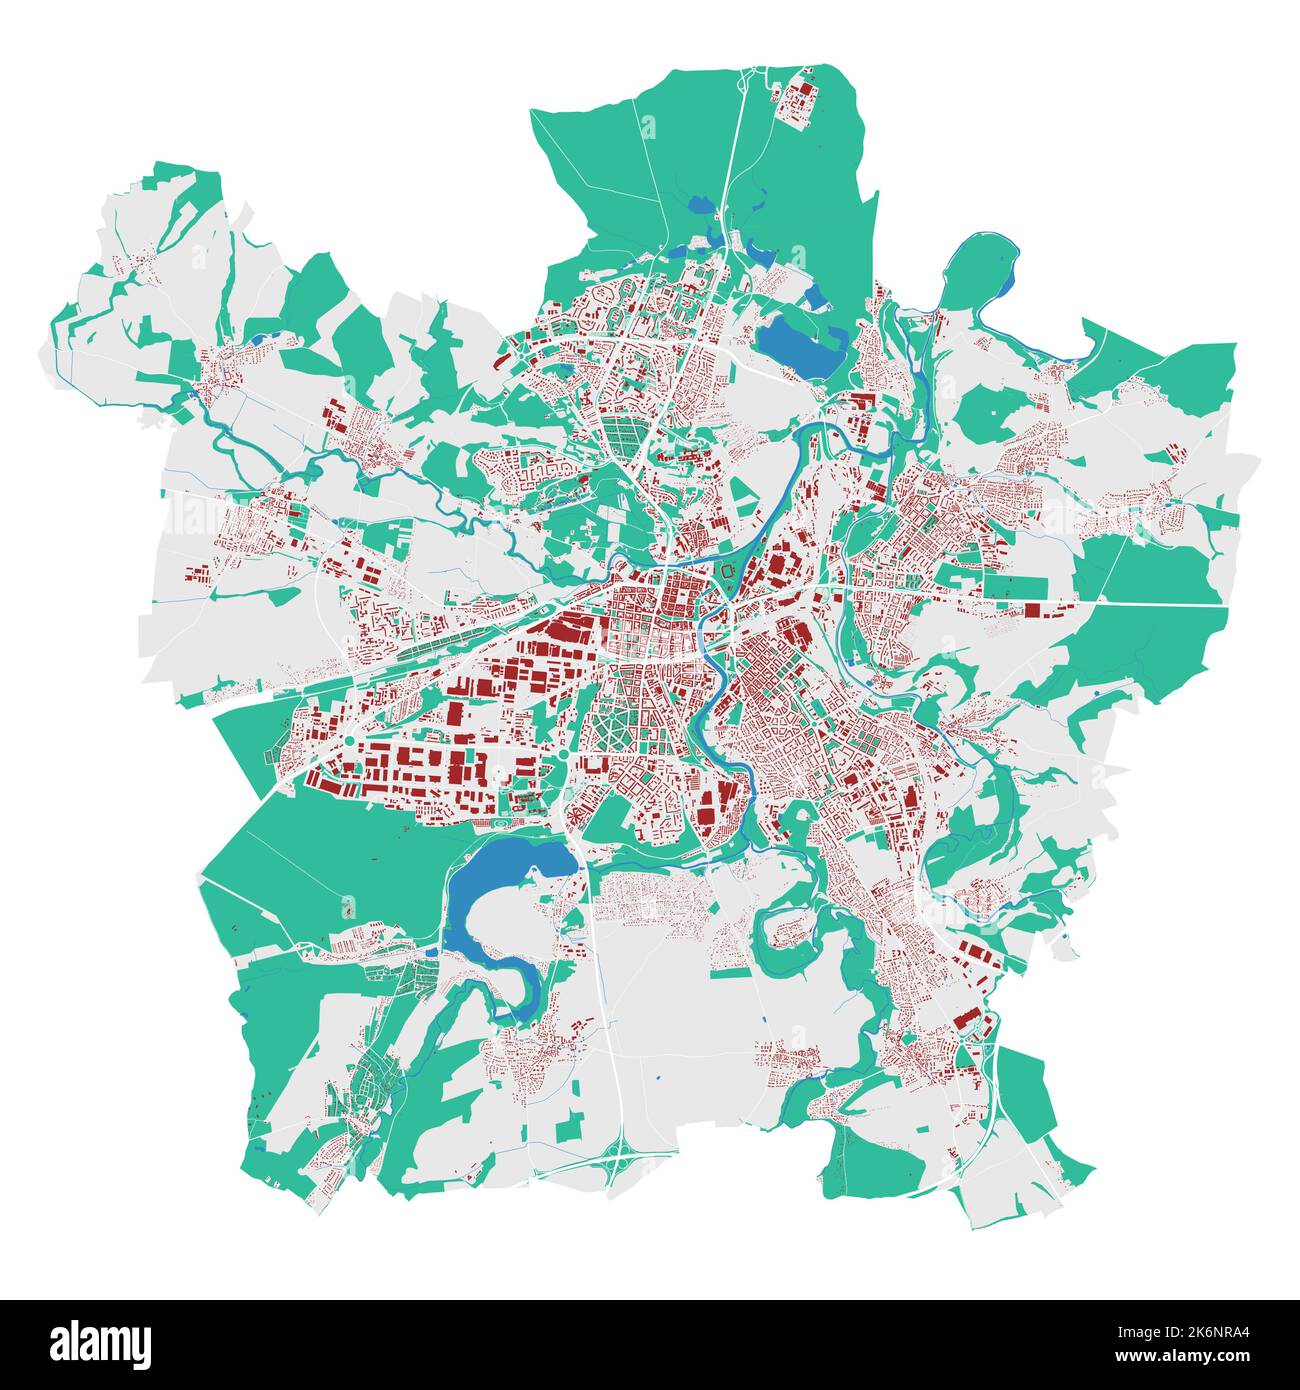 Plzen-Vektorkarte. Detaillierte Karte des Verwaltungsgebiets der Stadt Plzeň. Stadtbild-Panorama. Lizenzfreie Vektorgrafik. Übersichtskarte mit Gebäuden, wa Stock Vektor